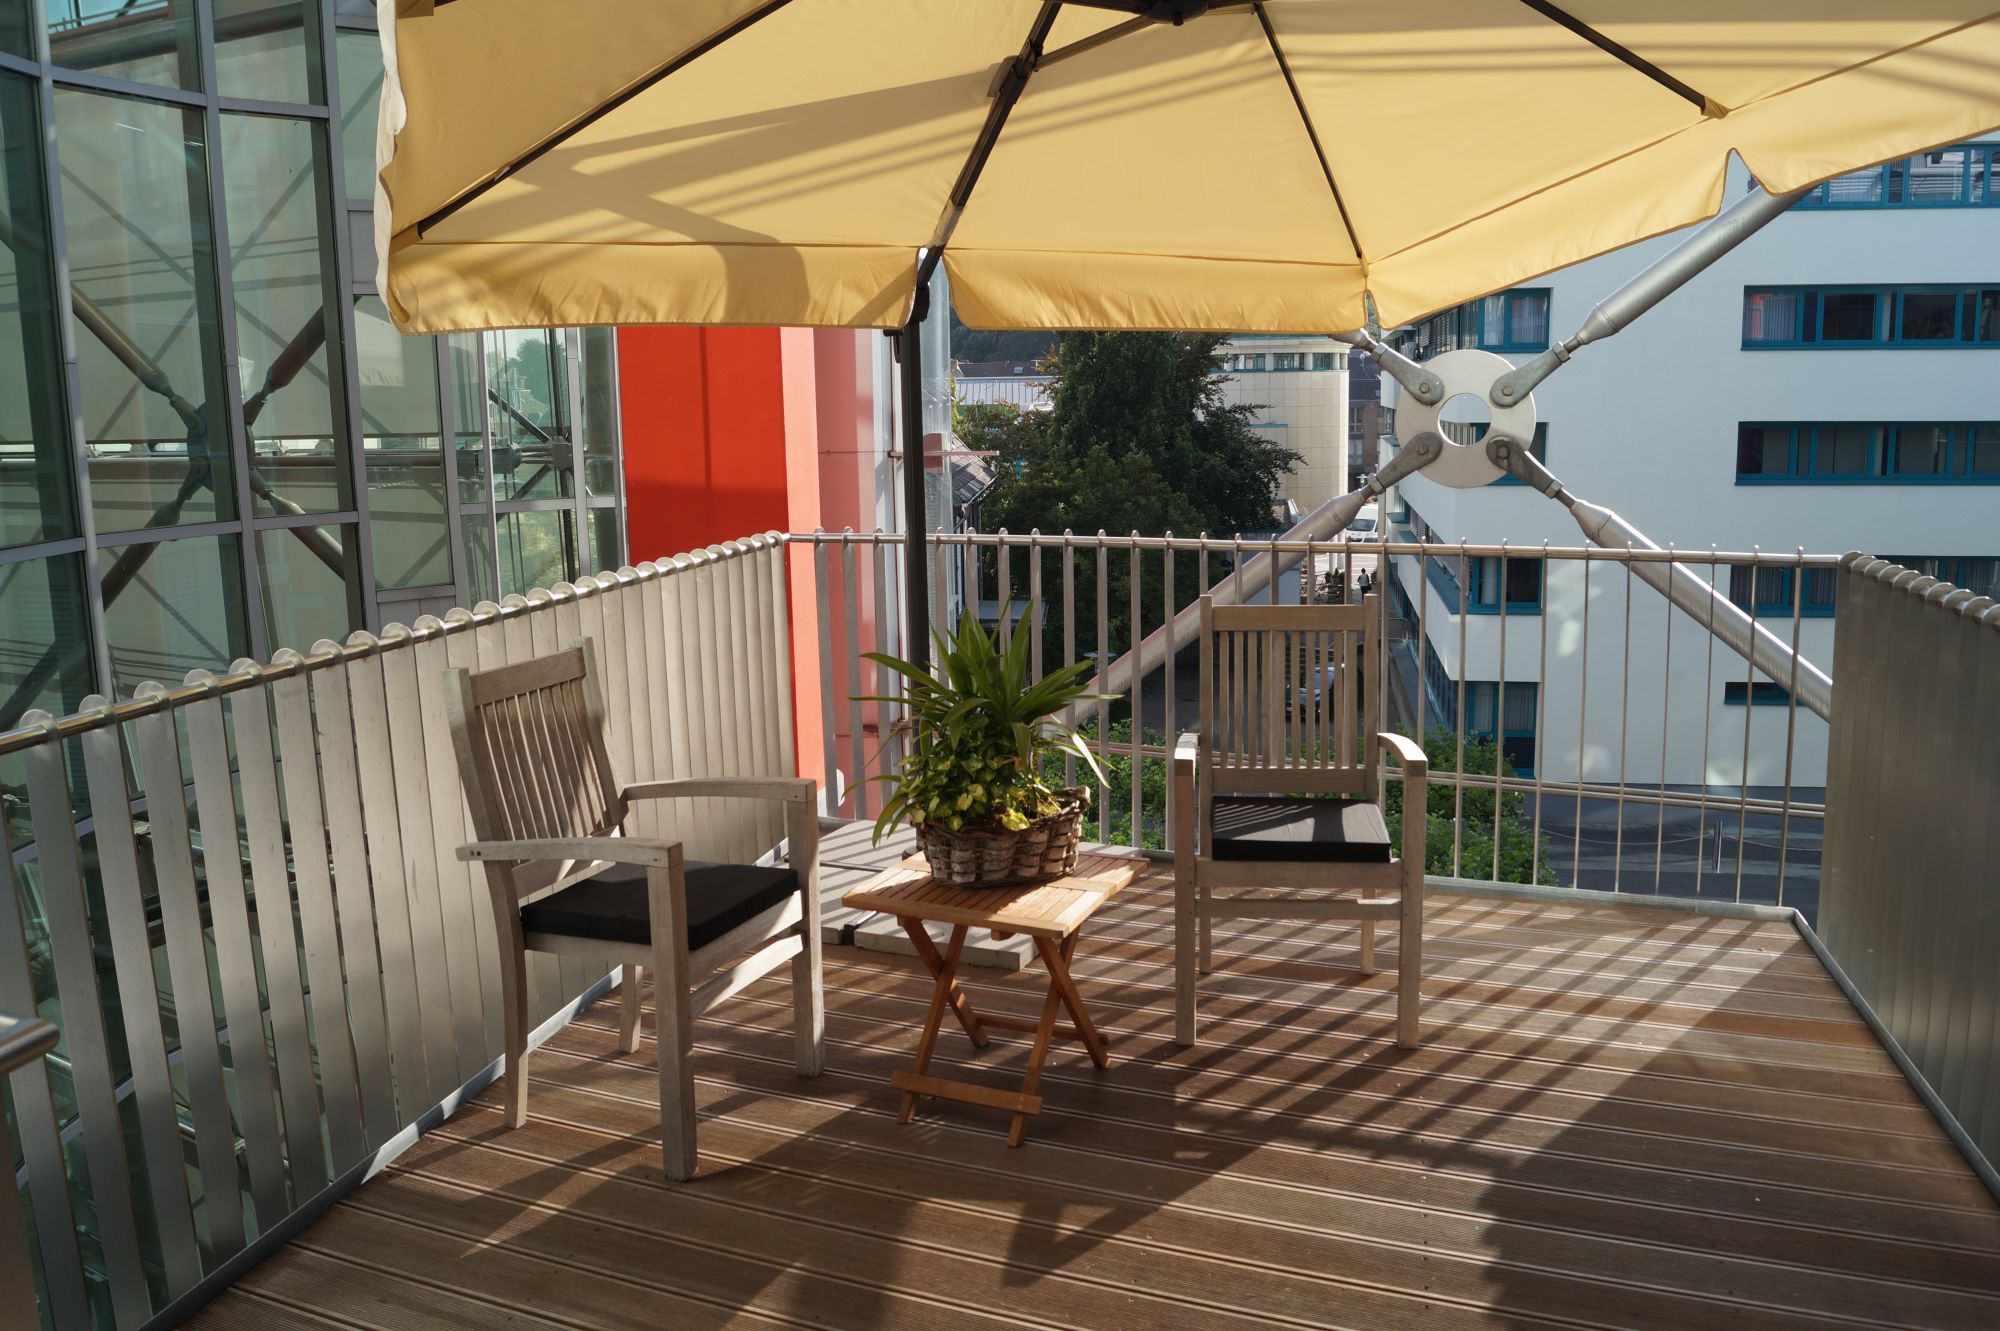 Tisch und Stühle auf dem Balkon der Tagespflege in Heinsberg